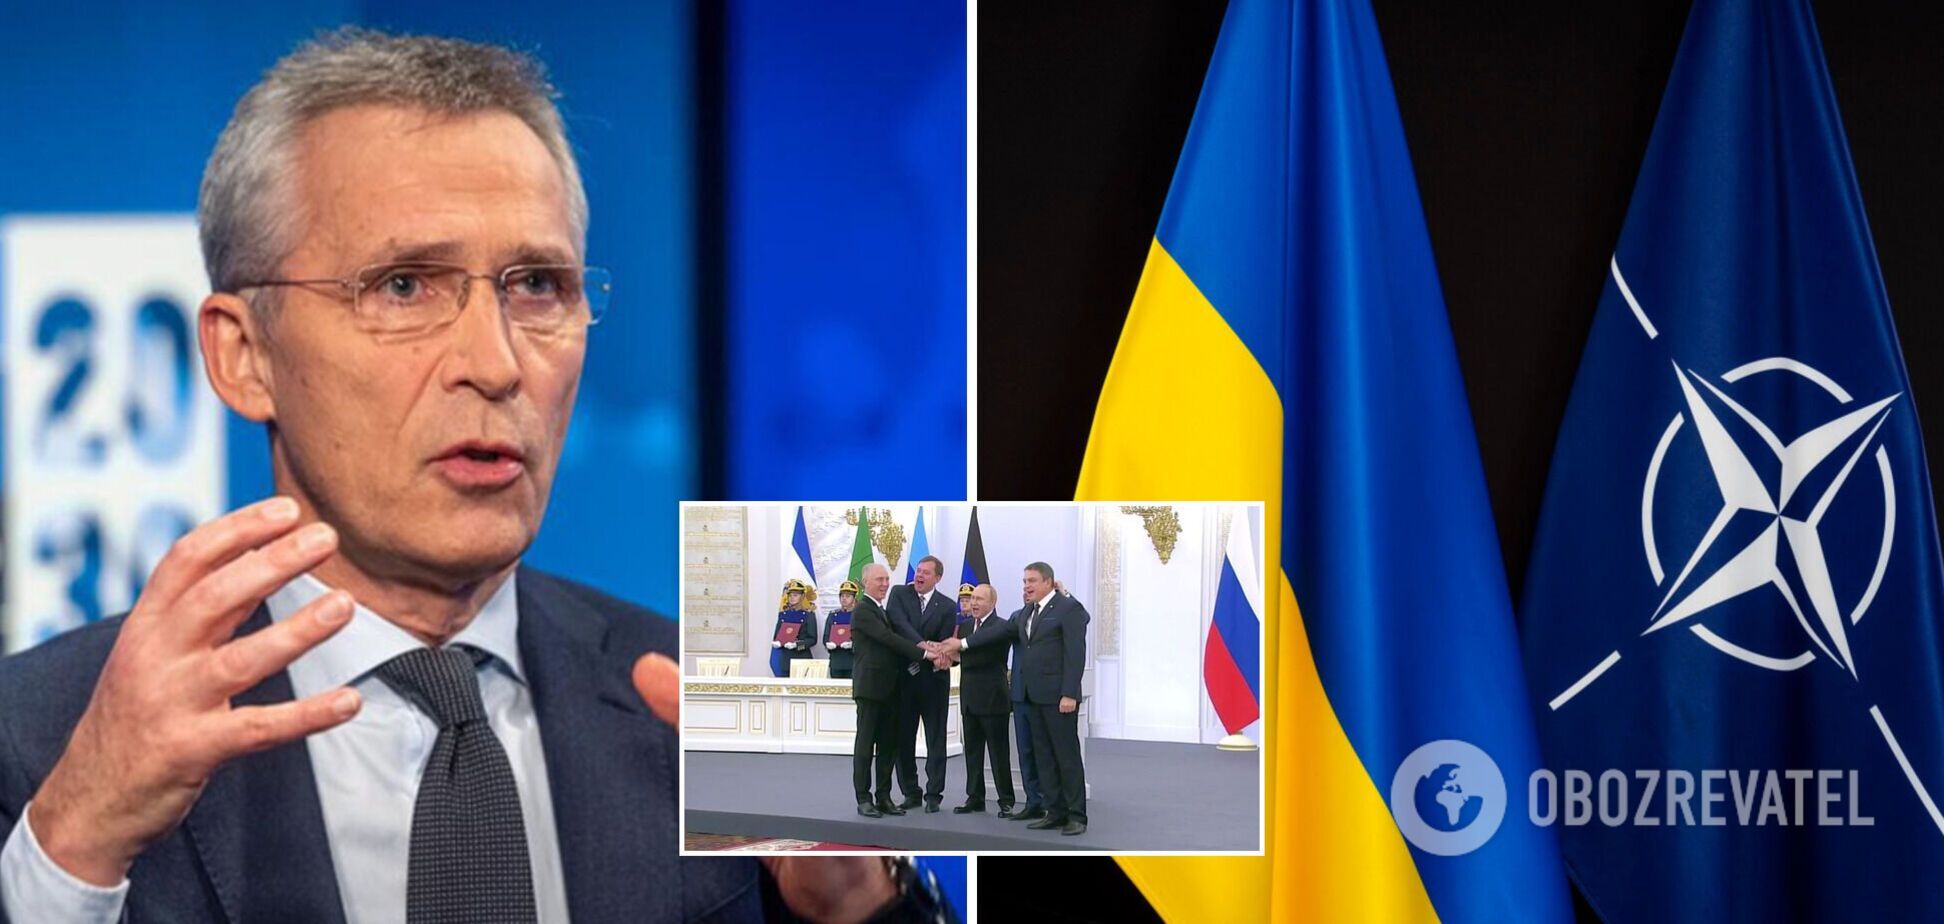 Столтенберг: решение о членстве Украины в НАТО будут принимать все 30 стран-союзников путем консенсуса